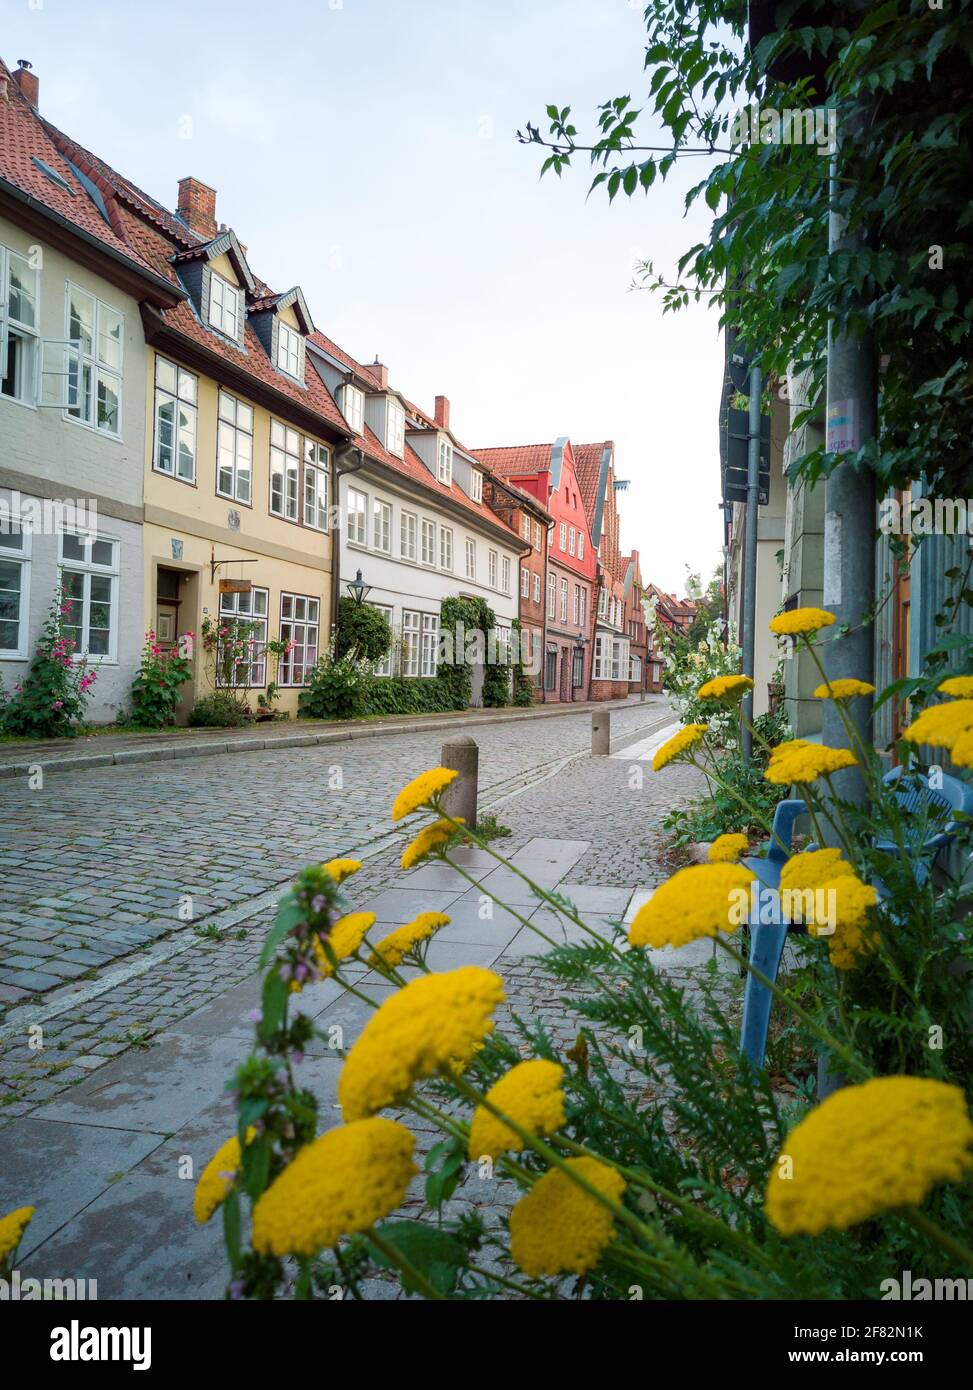 Belles rues historiques de Luneburg en Basse-saxe allemagne avec fleurs jaunes en lumière douce à la lumière du jour au printemps avec de belles maisons en briques Banque D'Images